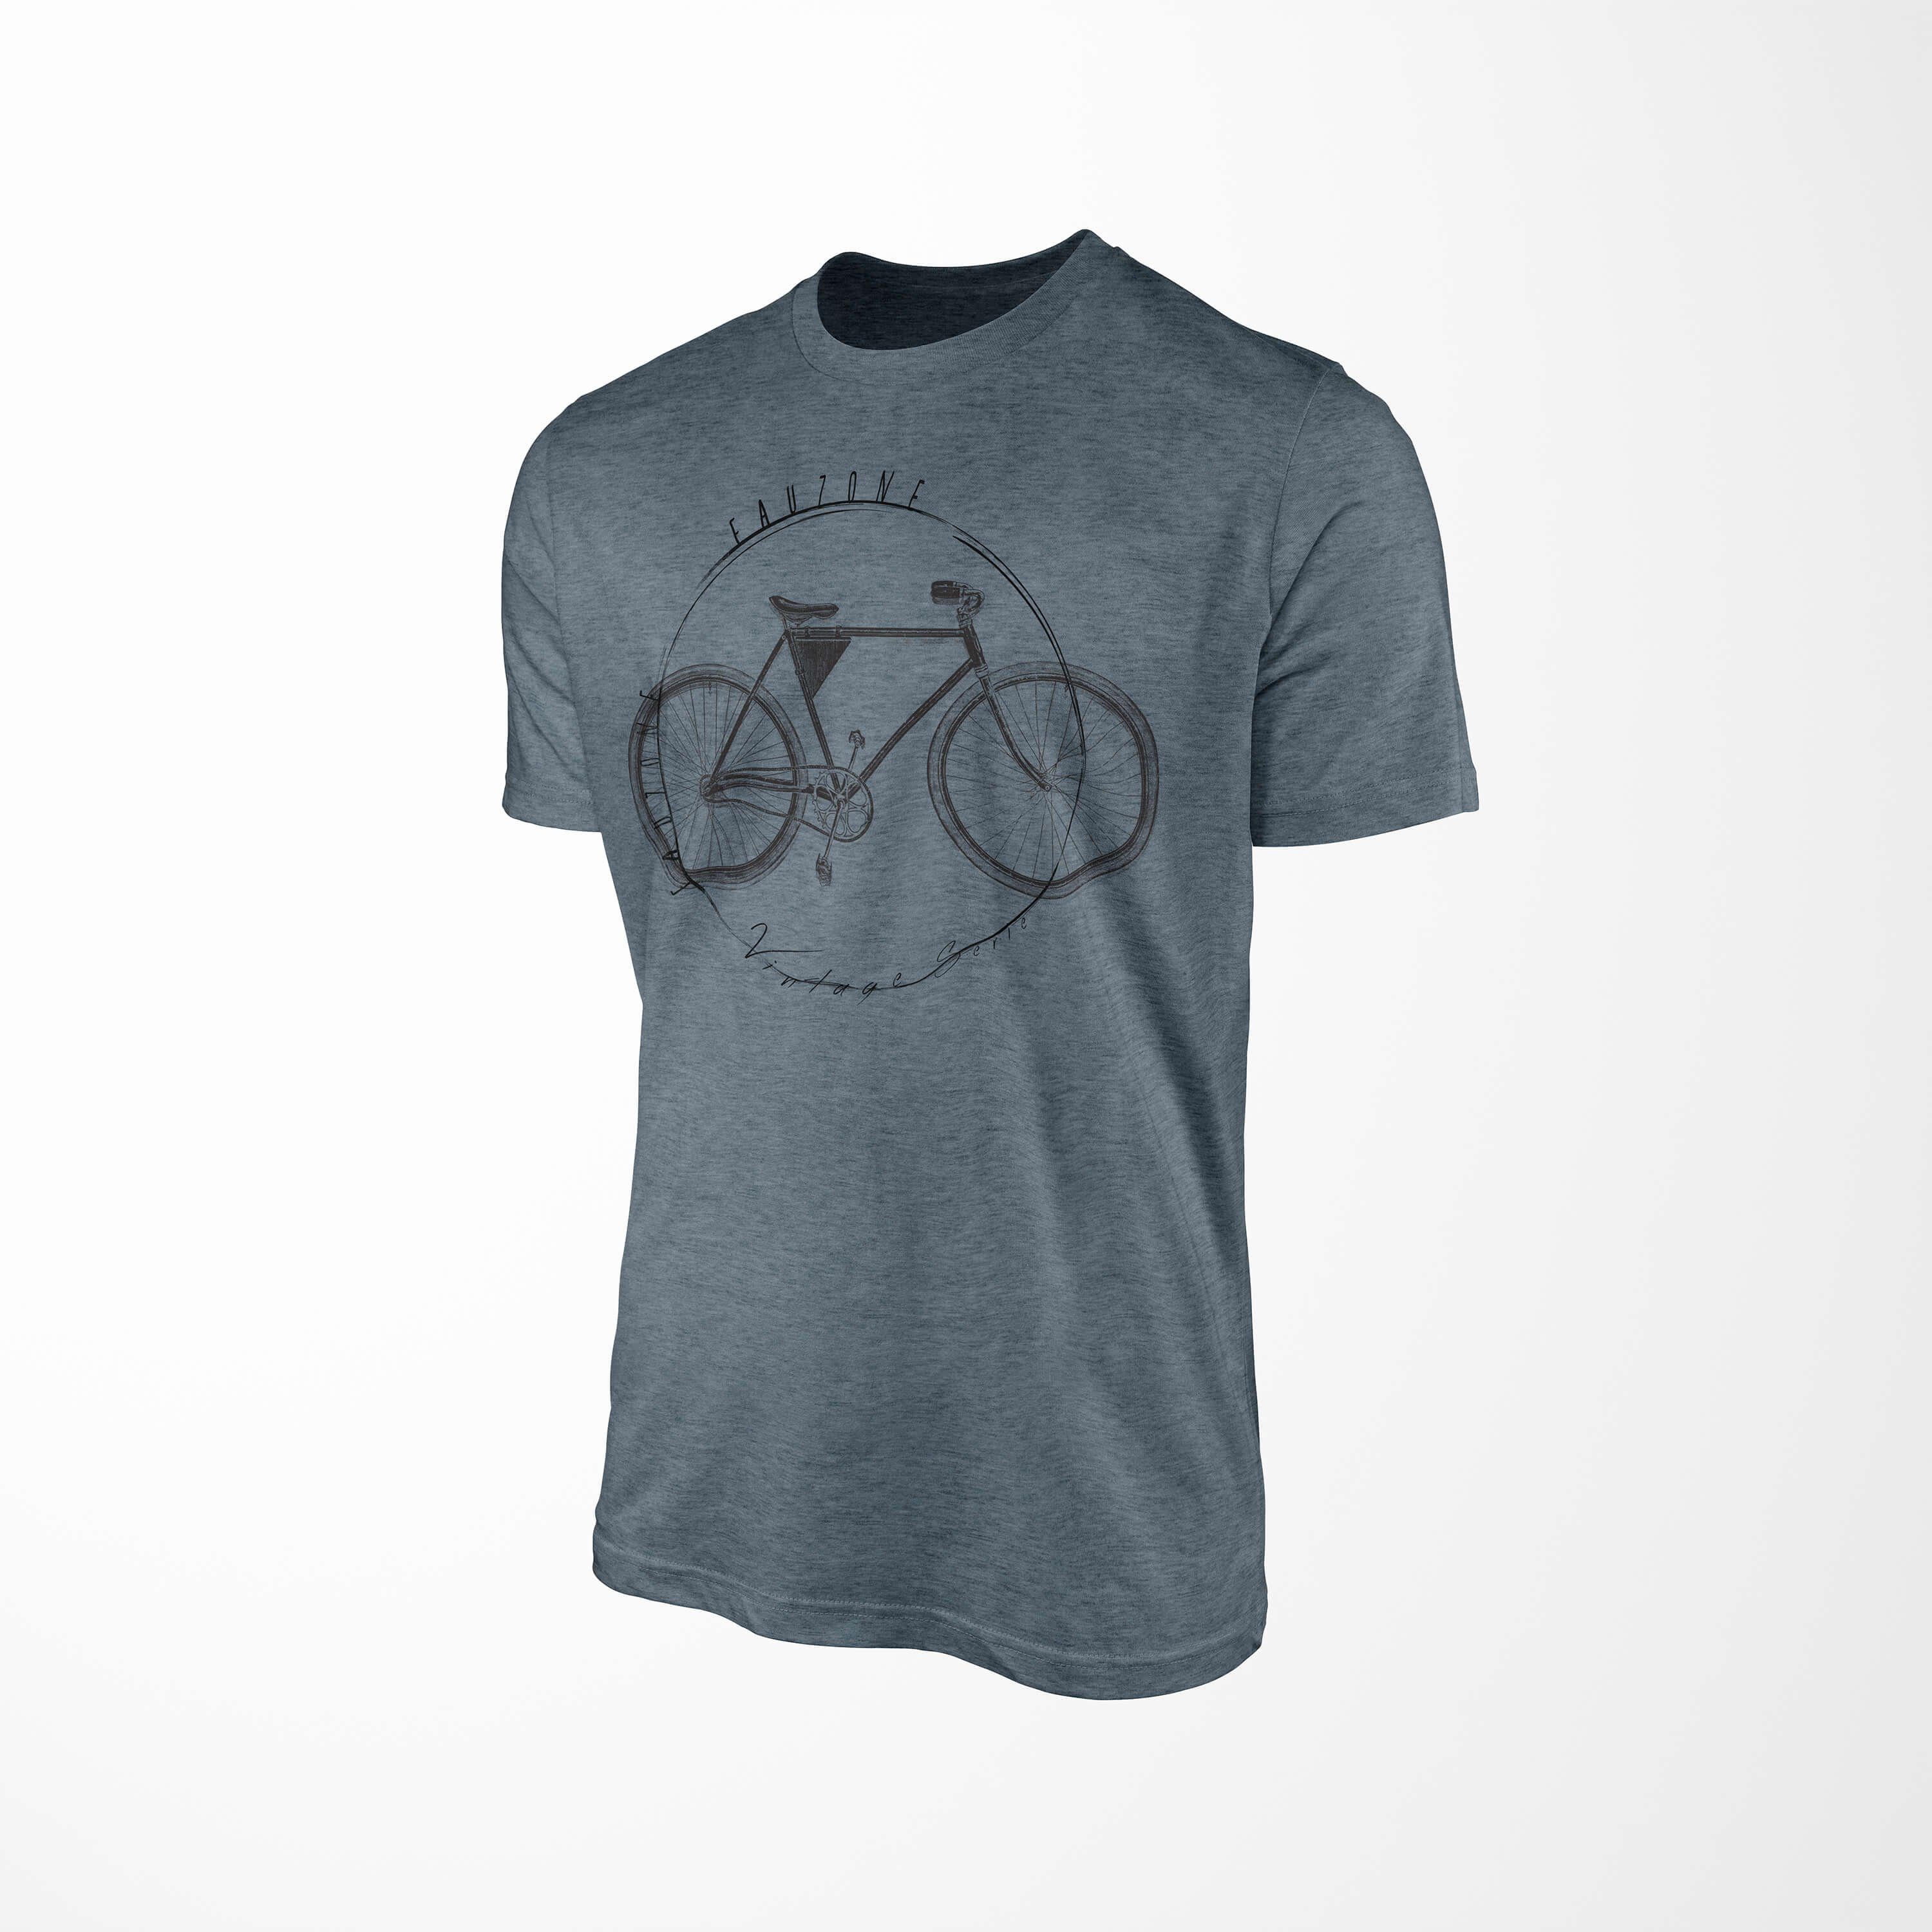 T-Shirt Art Vintage Sinus Indigo Fahrrad Herren T-Shirt